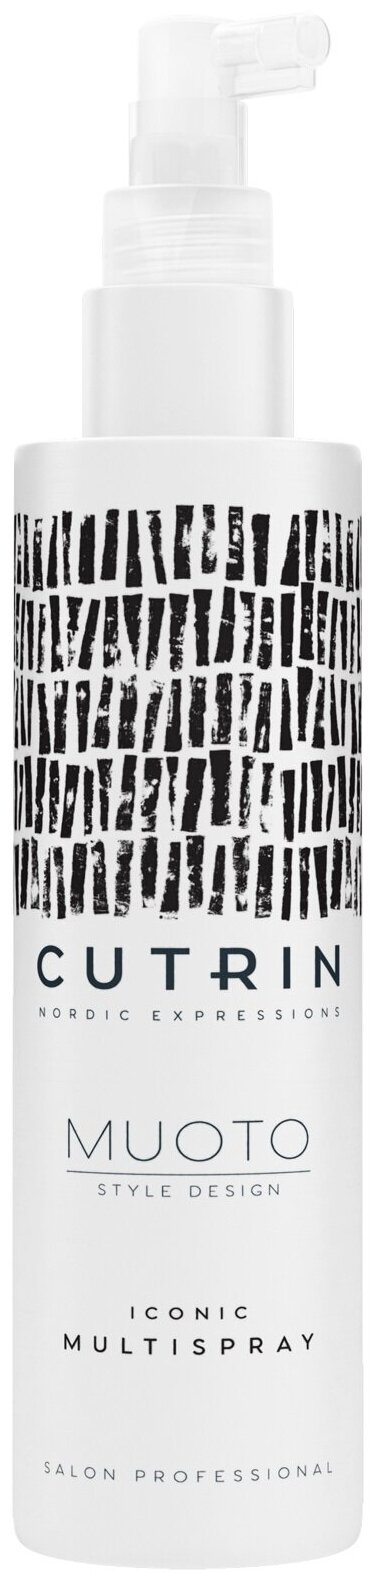 Cutrin Культовый многофункциональный спрей, 200 мл (Cutrin, ) - фото №1